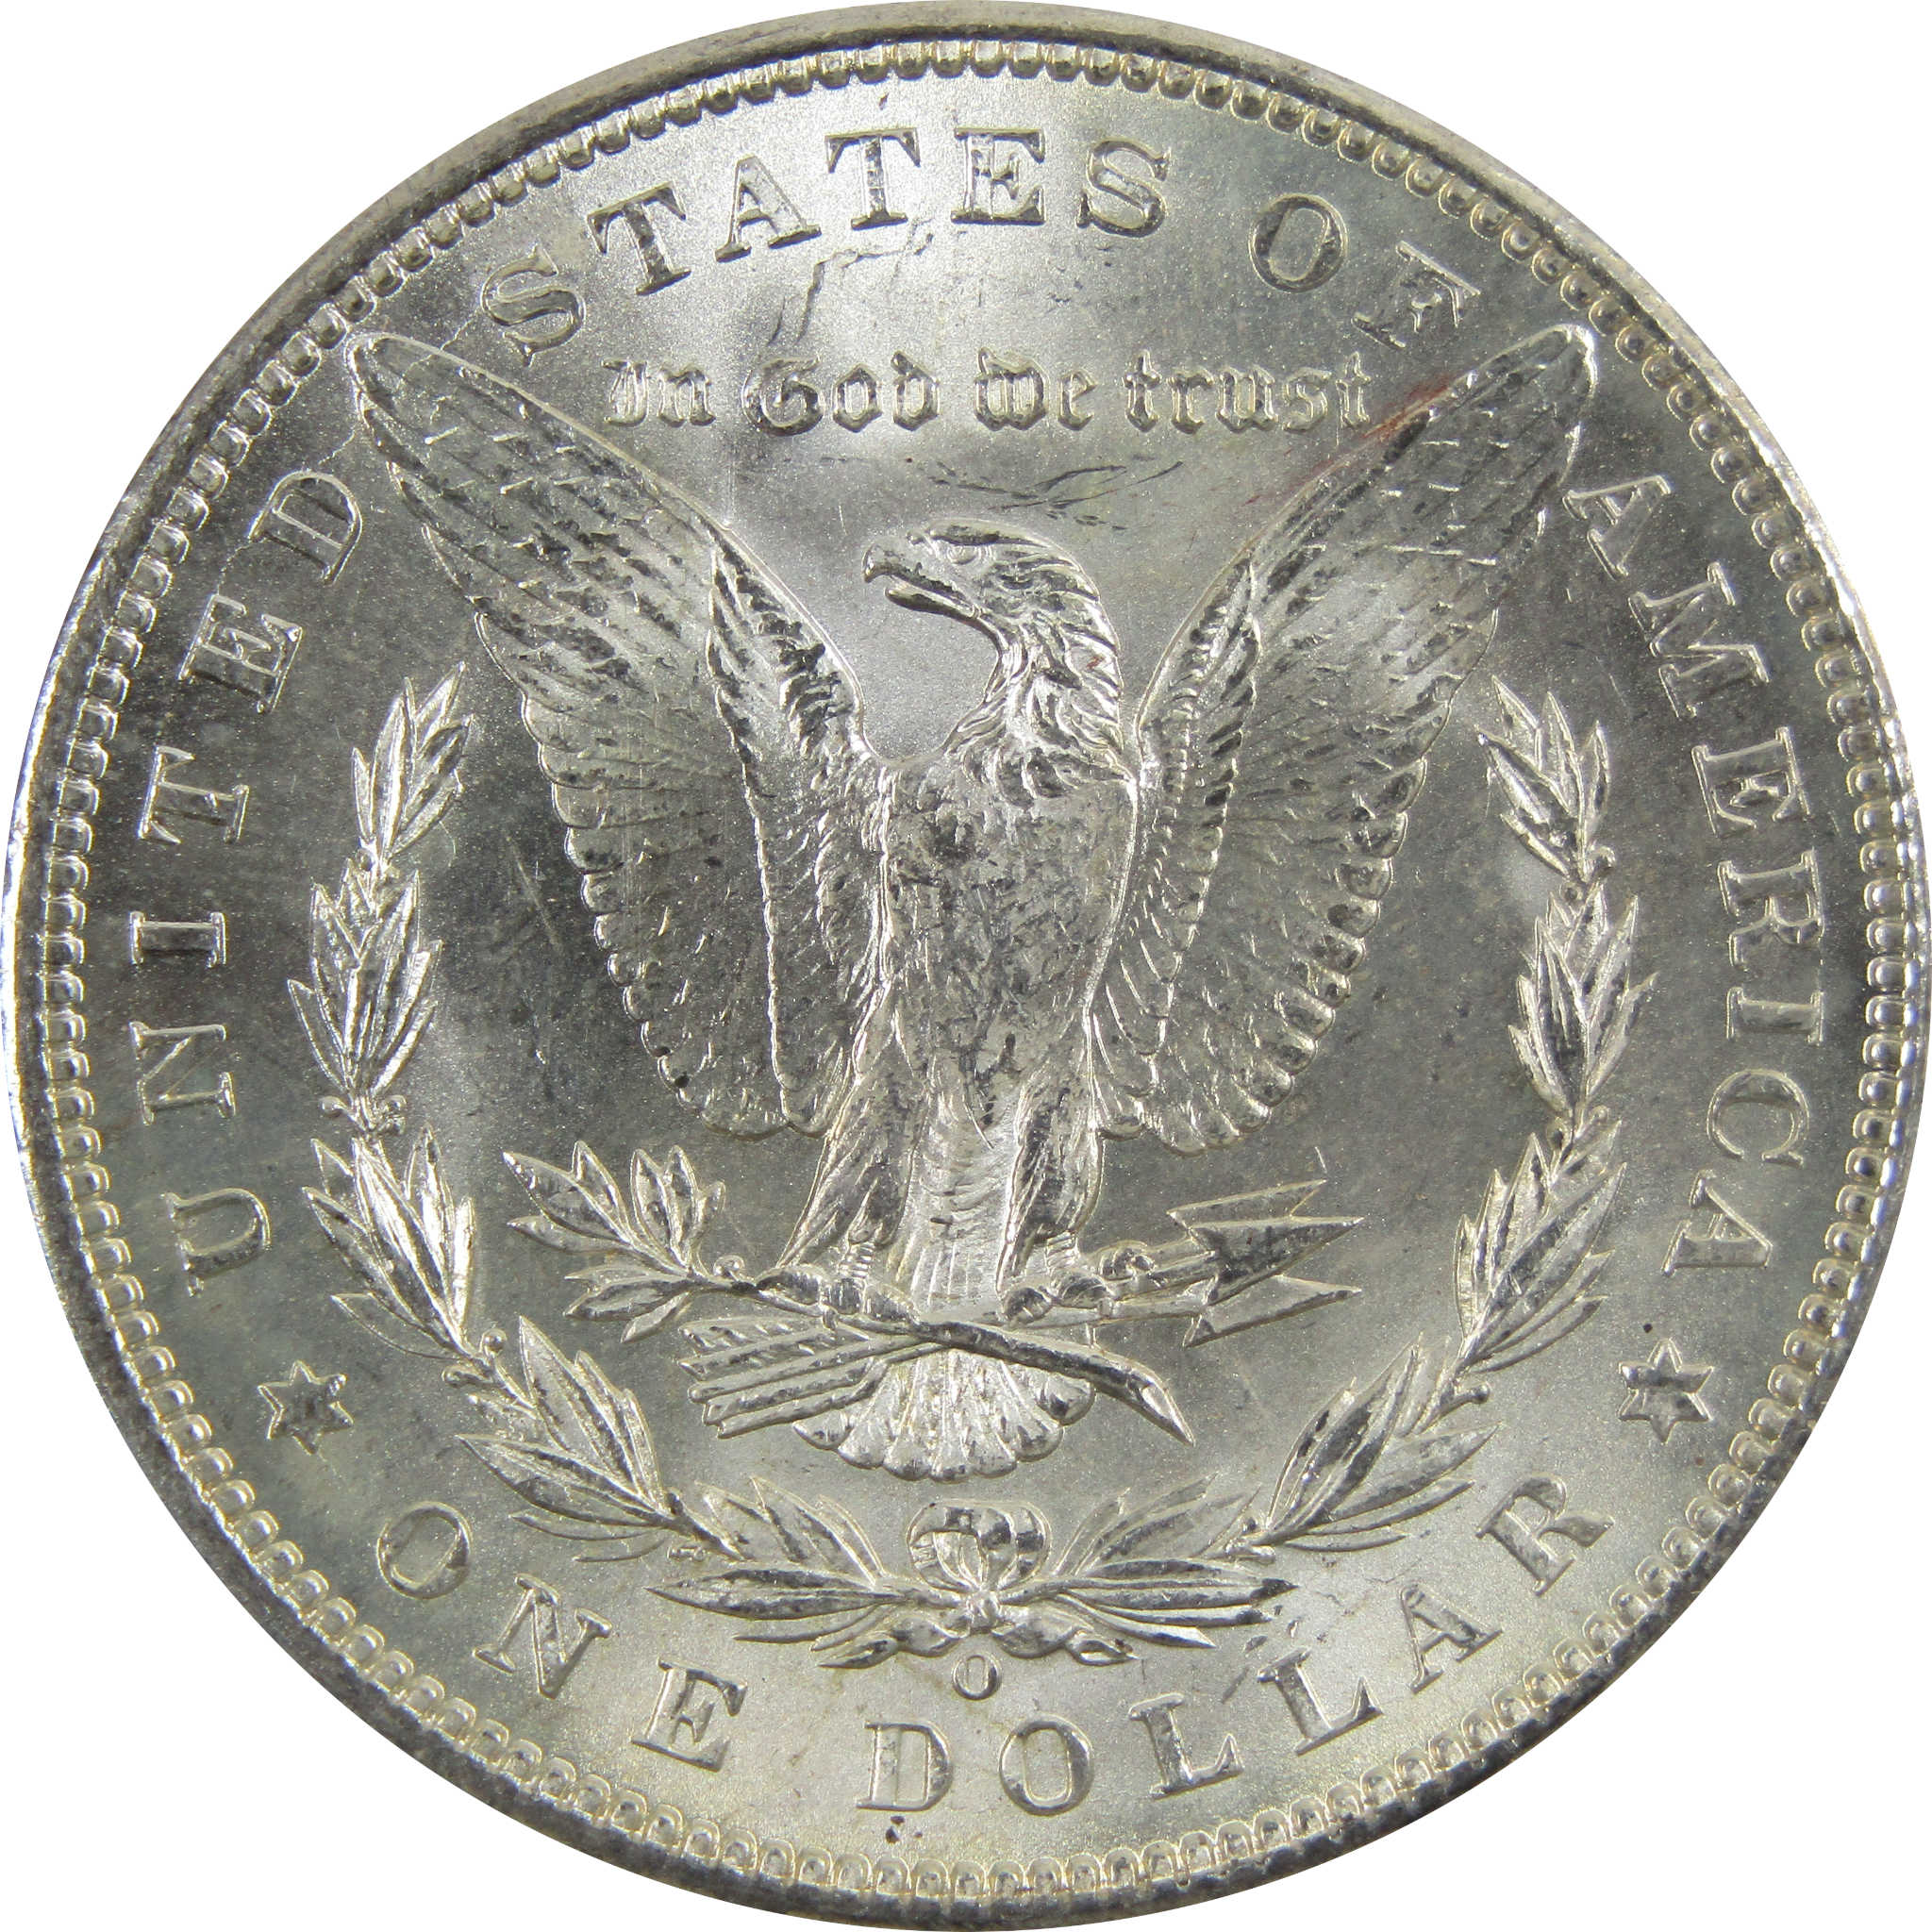 1898 O Morgan Dollar BU Uncirculated 90% Silver $1 Coin SKU:I5233 - Morgan coin - Morgan silver dollar - Morgan silver dollar for sale - Profile Coins &amp; Collectibles